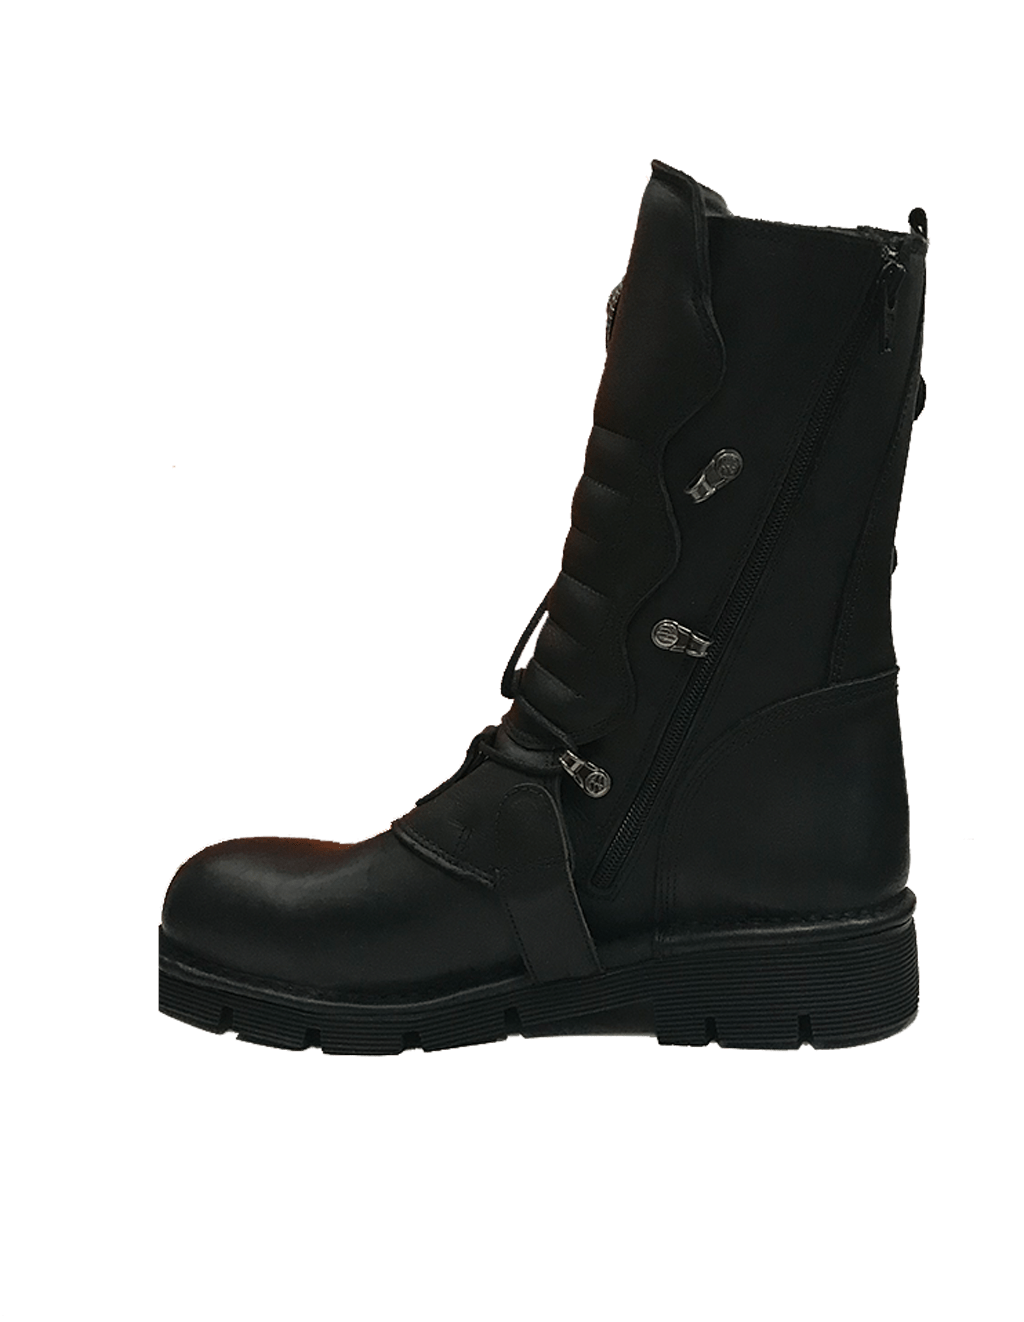 NEW ROCK BOOT COMFORT M-1473-S1 - Raben Footwear